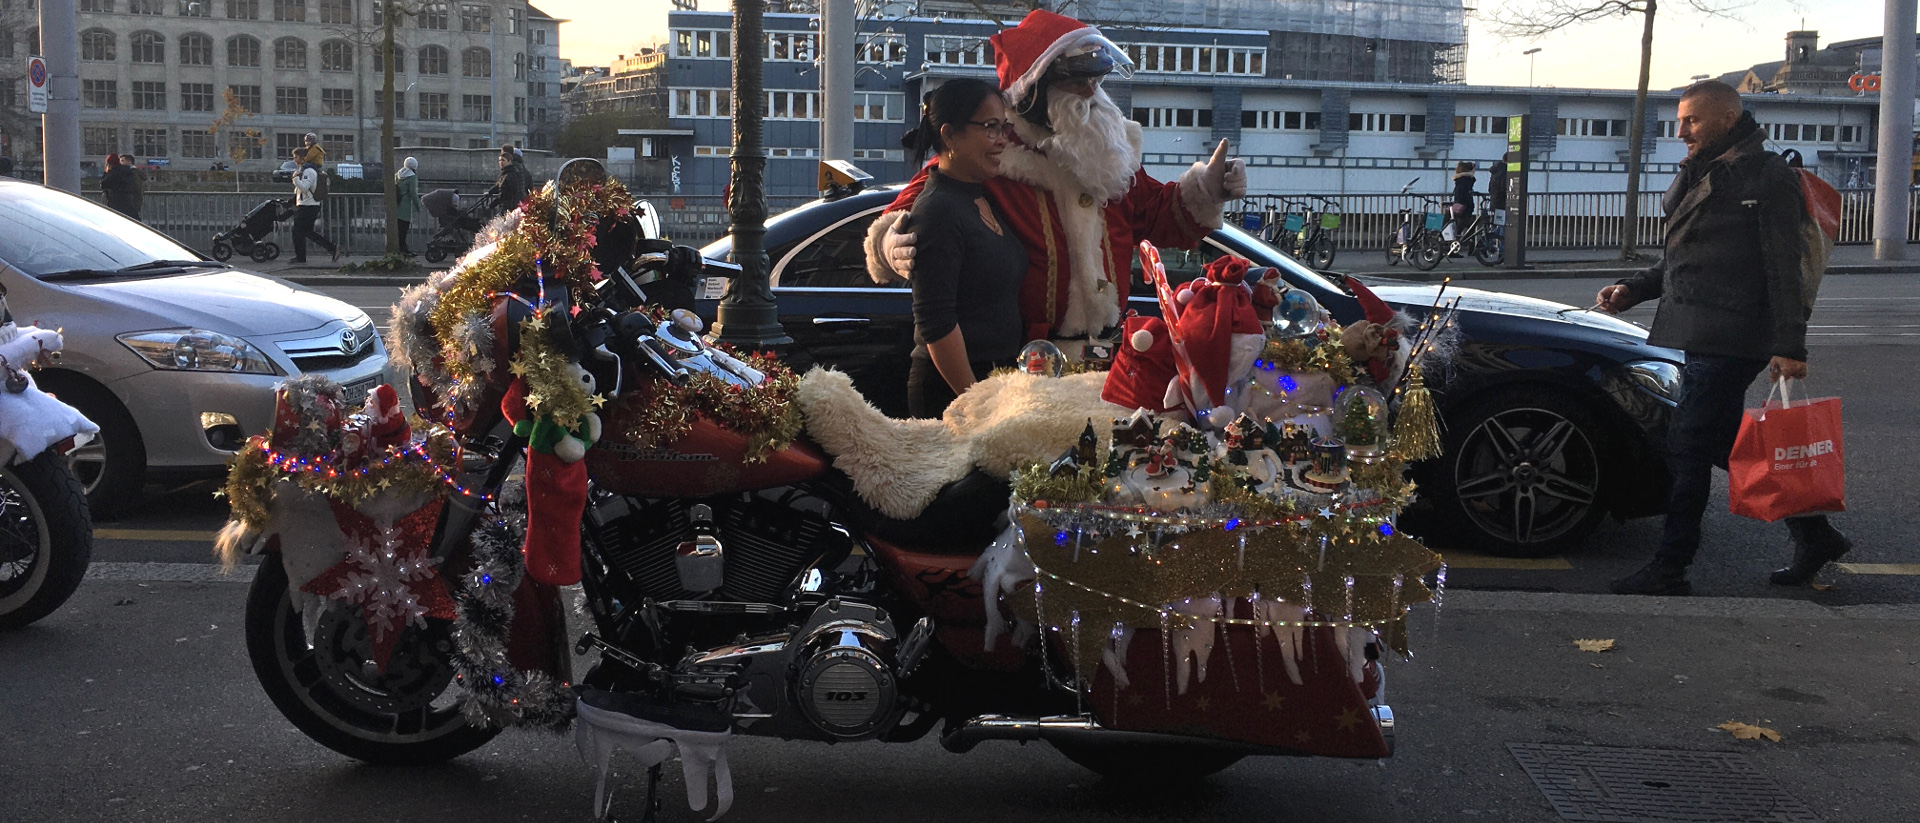 Weihnachtsmann mit Harley Davidson am Limmatquai in Zürich